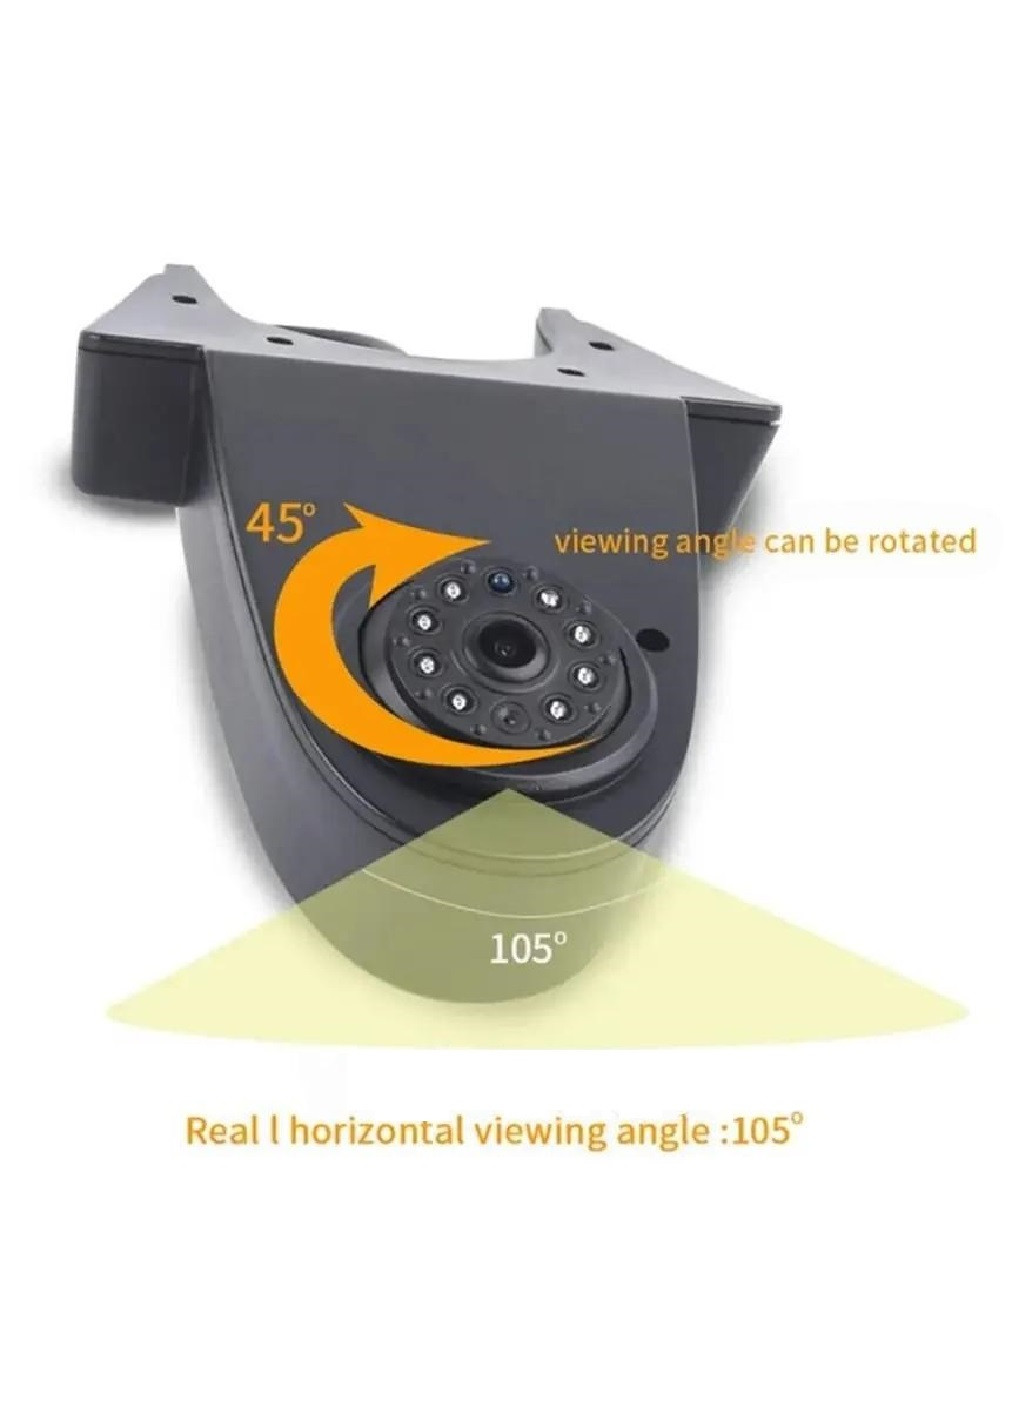 Камера заднего вида в автомобиль на крышу с ИК-светодиодами датчиком сумерек 22x13.5x5.5 см (476239-Prob) Черная Unbranded (277924029)